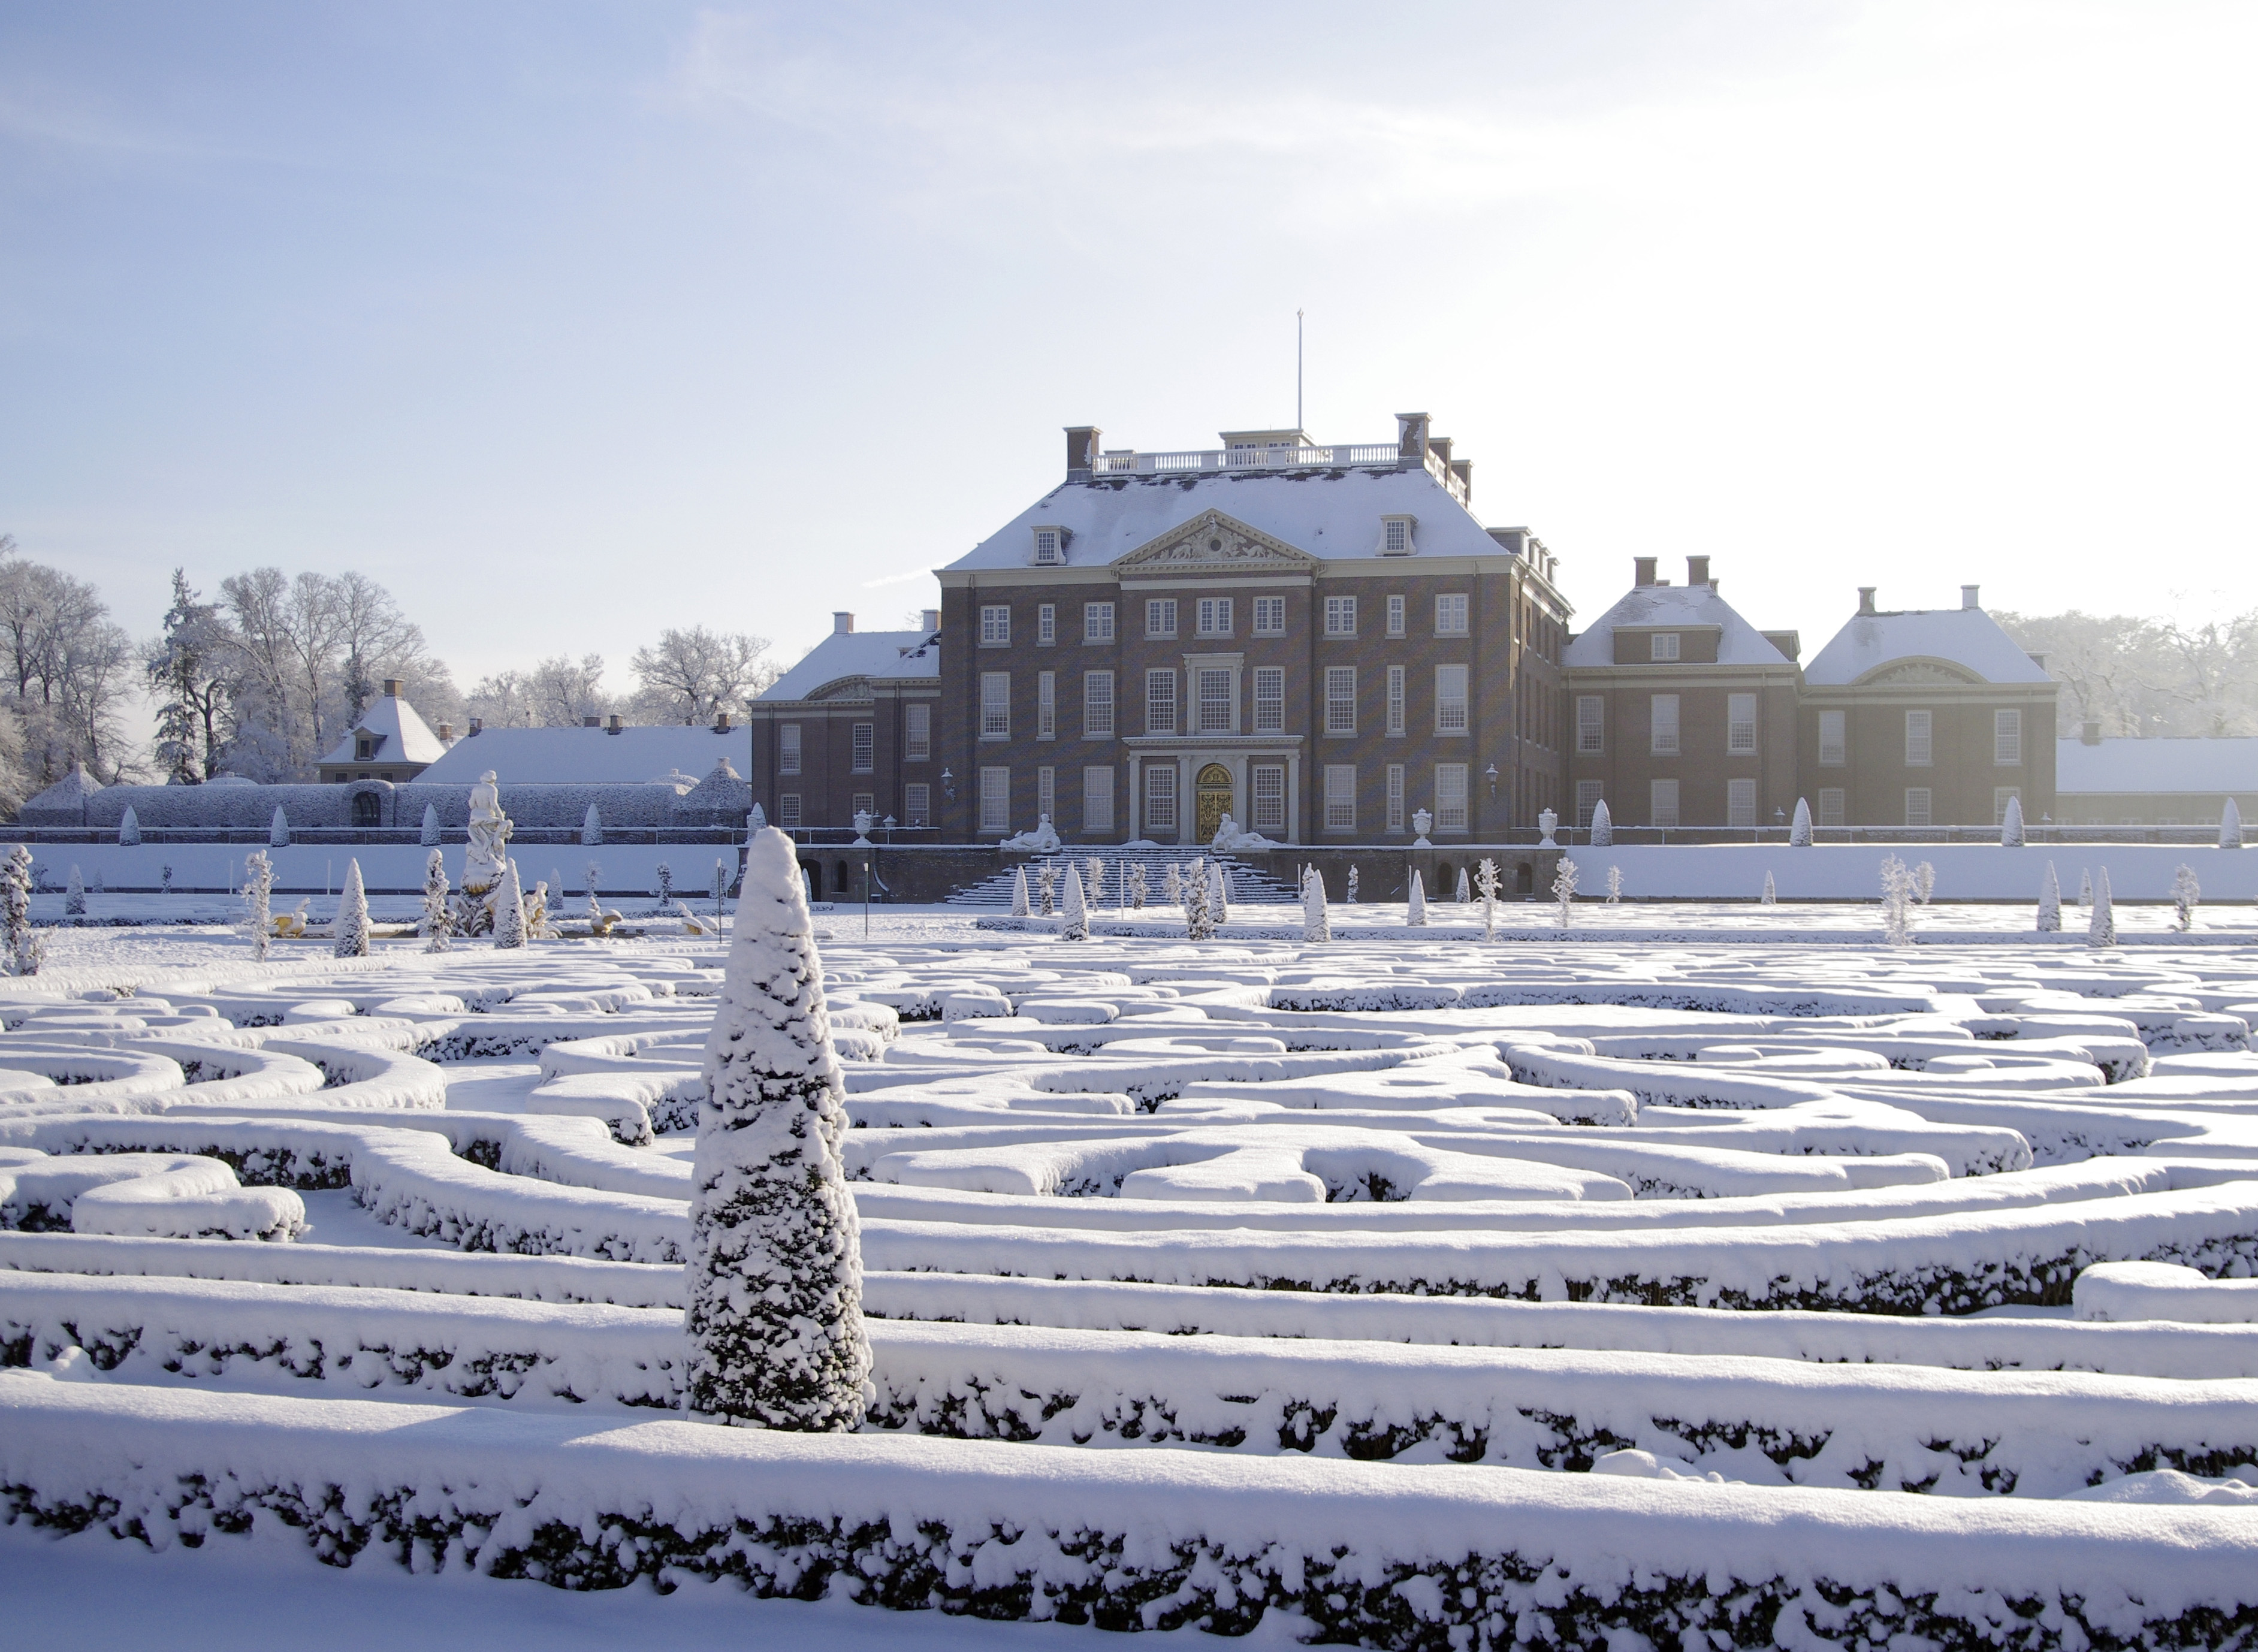 Achtergevel-winter-foto-Paleis-Het-Loo